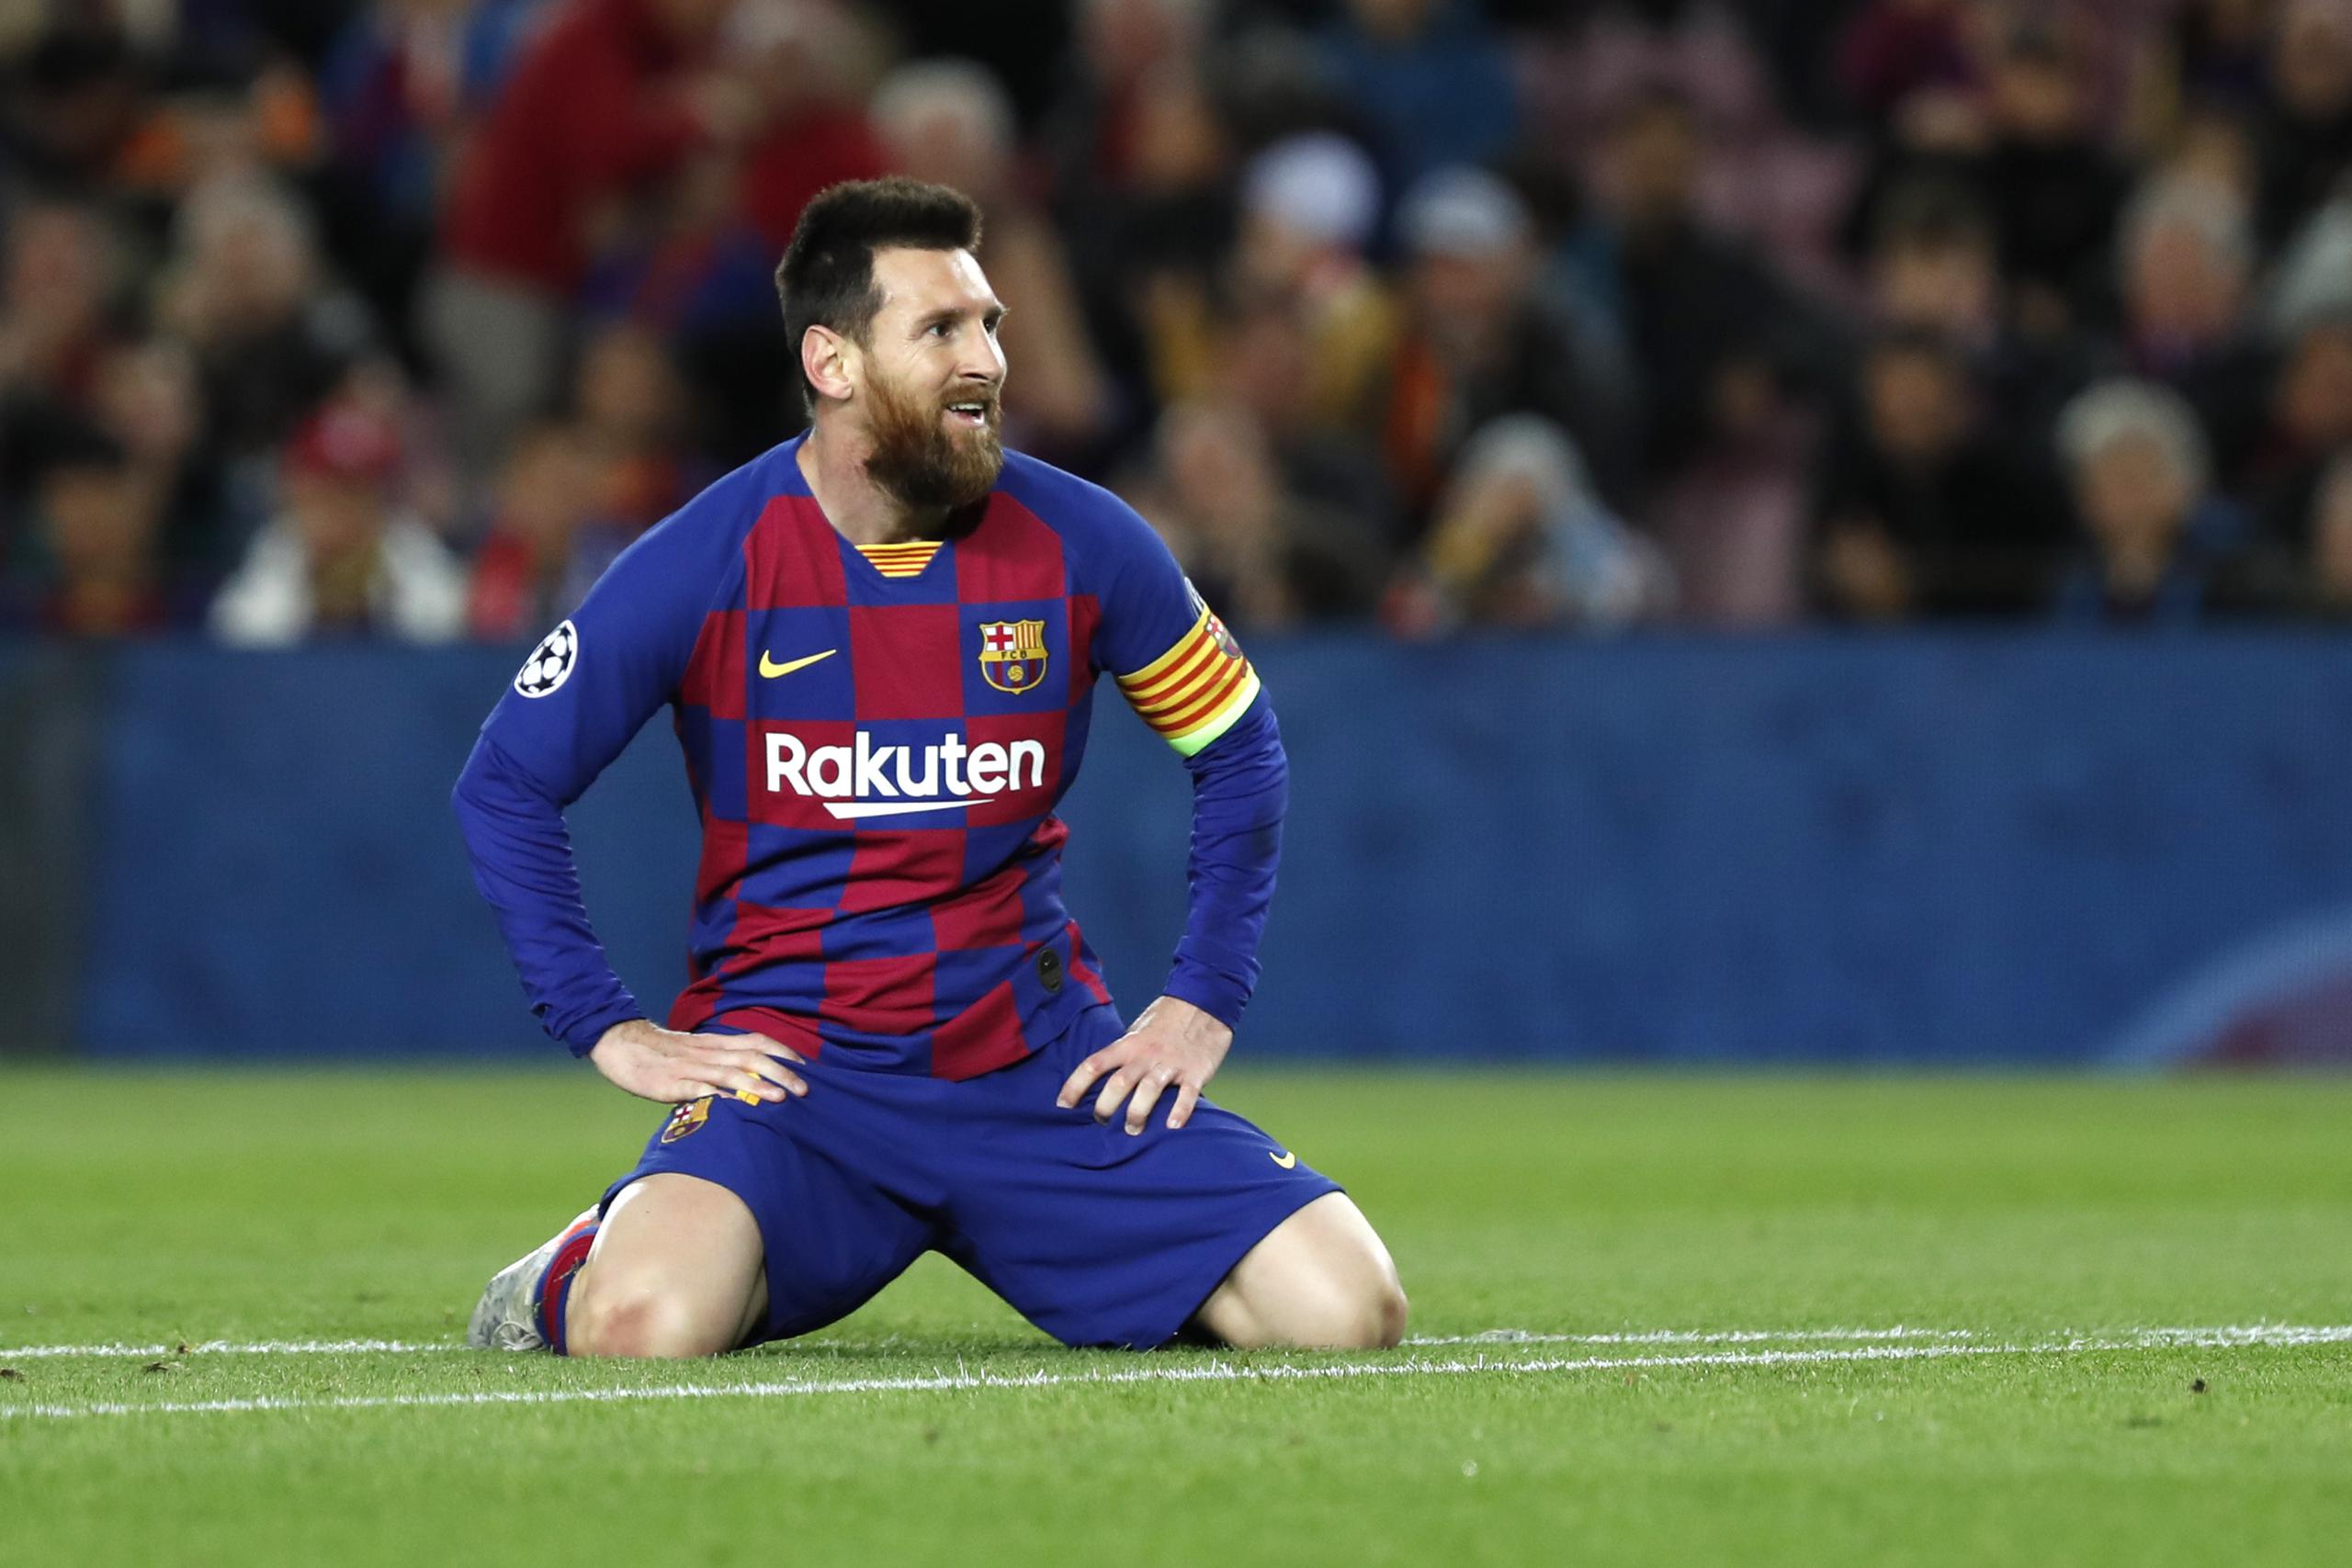 Lionel Messi está viviendo estos días su peor crisis en el club Barcelona, equipo del cual intentó salir el mes pasado. Ahora el equipo que usualmente era su aliciente a sus problemas en la selección de Argentina no es su lugar seguro. ¿Lo será ahora la albiceleste?